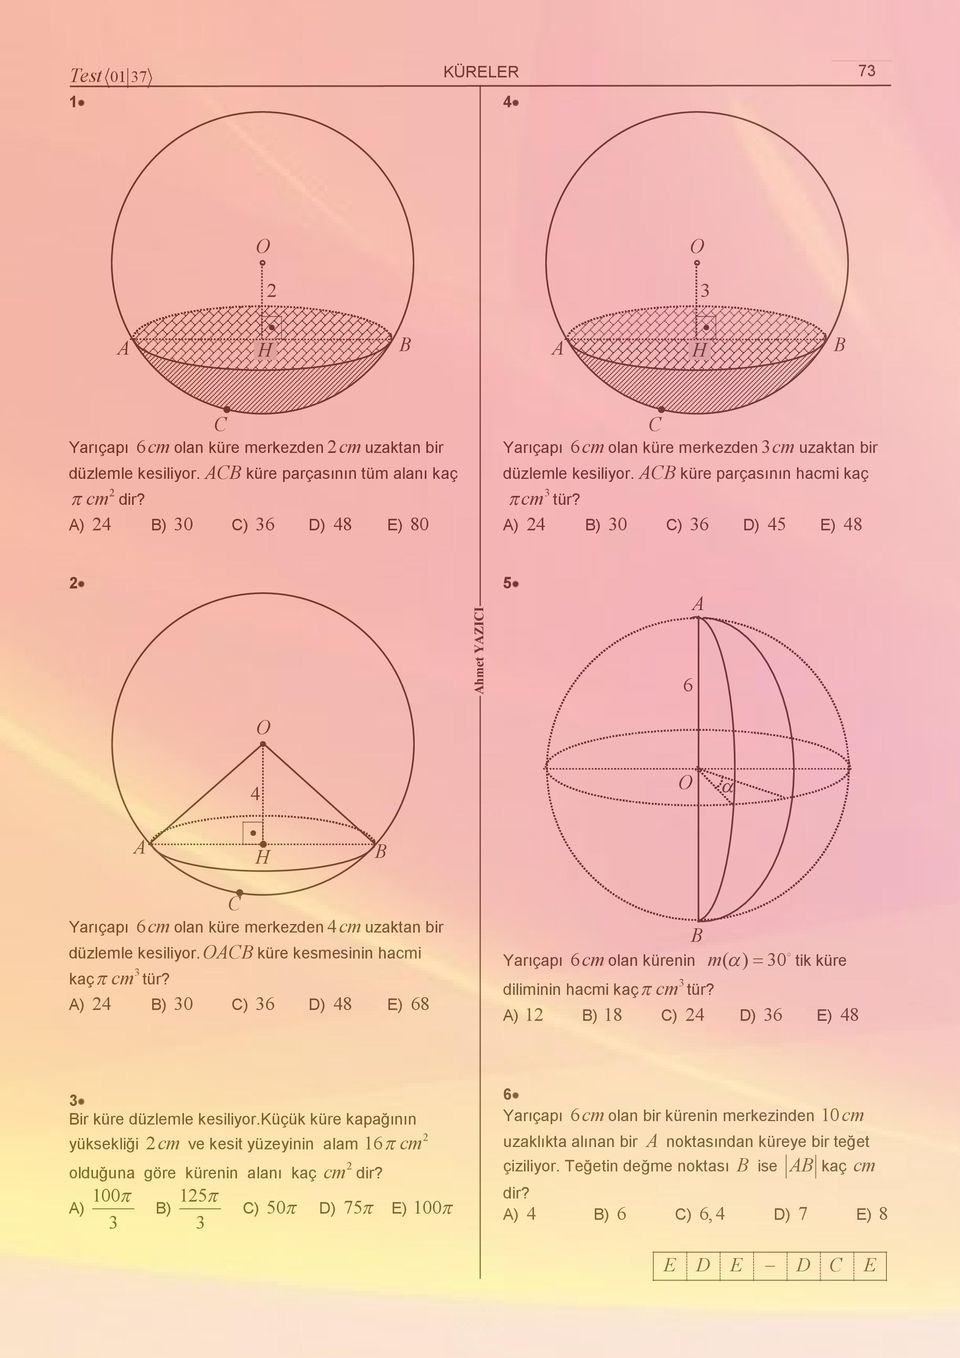 ) ) 0 ) D) 5 E) 8 hmet YZII 5 H Yarıçapı cm olan küre merkezden cm uzaktan bir düzlemle kesilior. küre kesmesinin hacmi kaç cm tür?